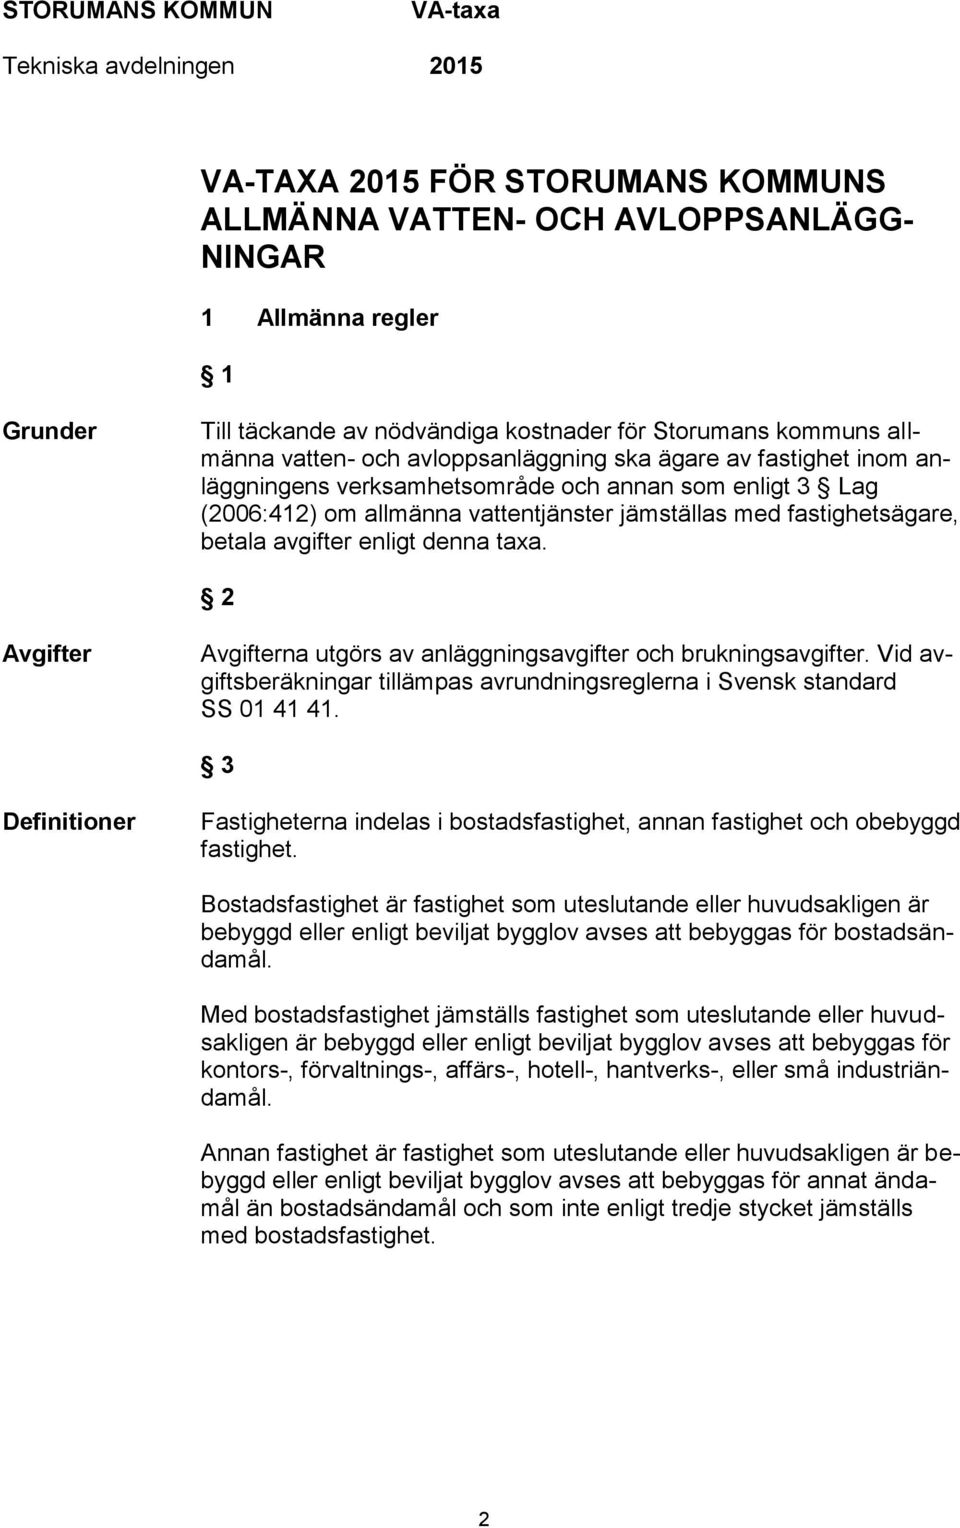 denna taxa. 2 Avgifter Avgifterna utgörs av anläggningsavgifter och brukningsavgifter. Vid avgiftsberäkningar tillämpas avrundningsreglerna i Svensk standard SS 01 41 41.